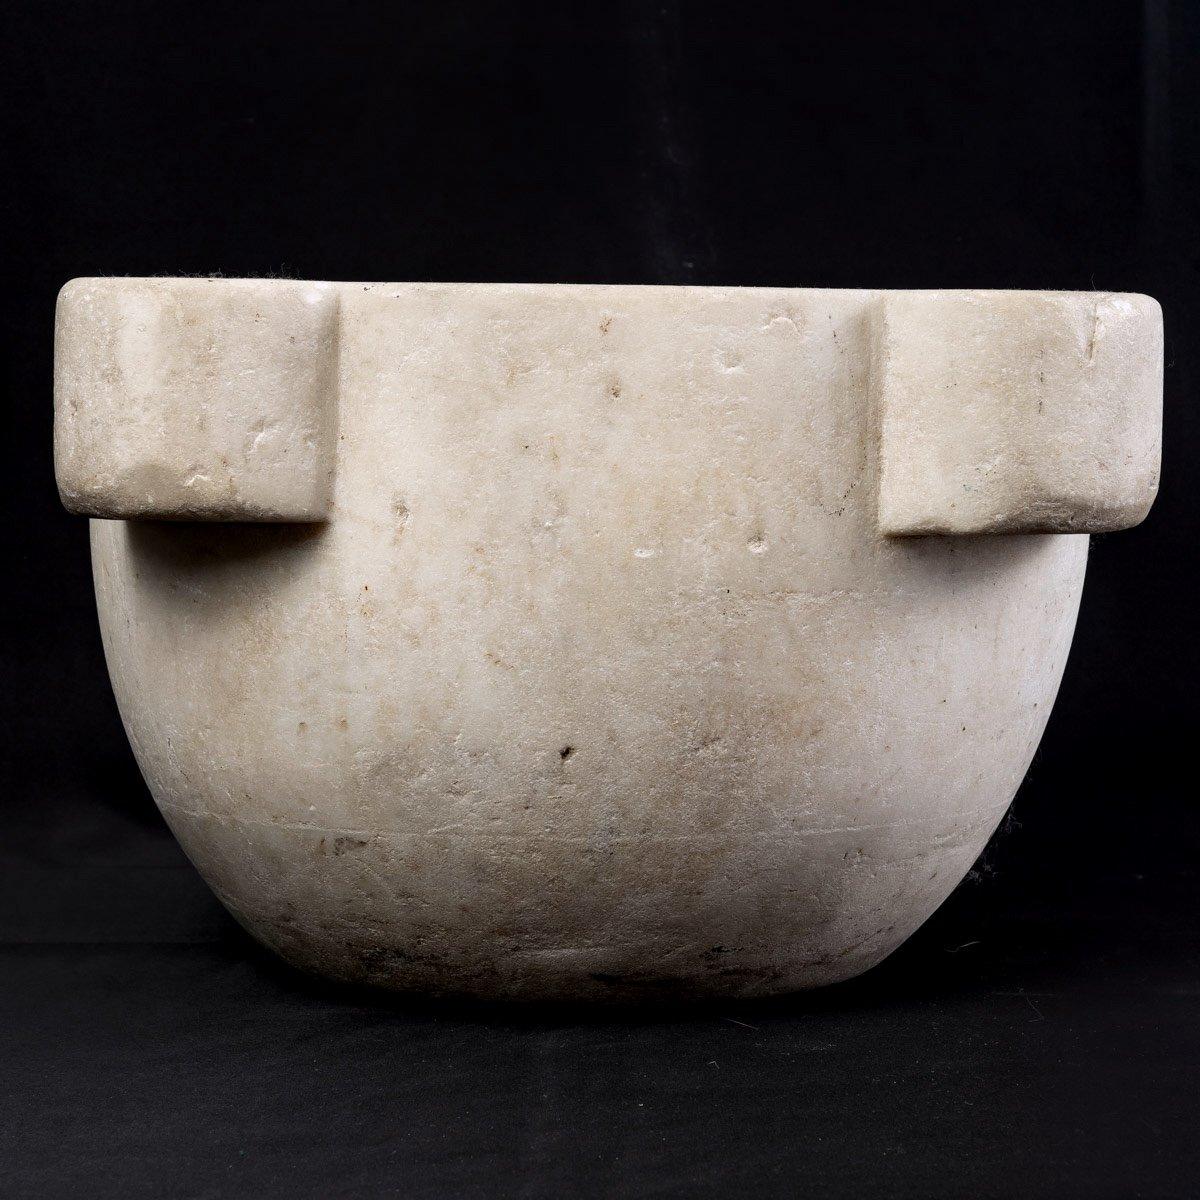 Ein seltener griechischer Apothekenmörser aus Marmor von Thassos, ein originelles und antikes Werk.
Die Patina und die Maserung des Marmors sind bemerkenswert.
Thassos-Marmor ist ein weißer Marmor, ein Naturstein.
Sein Name ist inspiriert von der